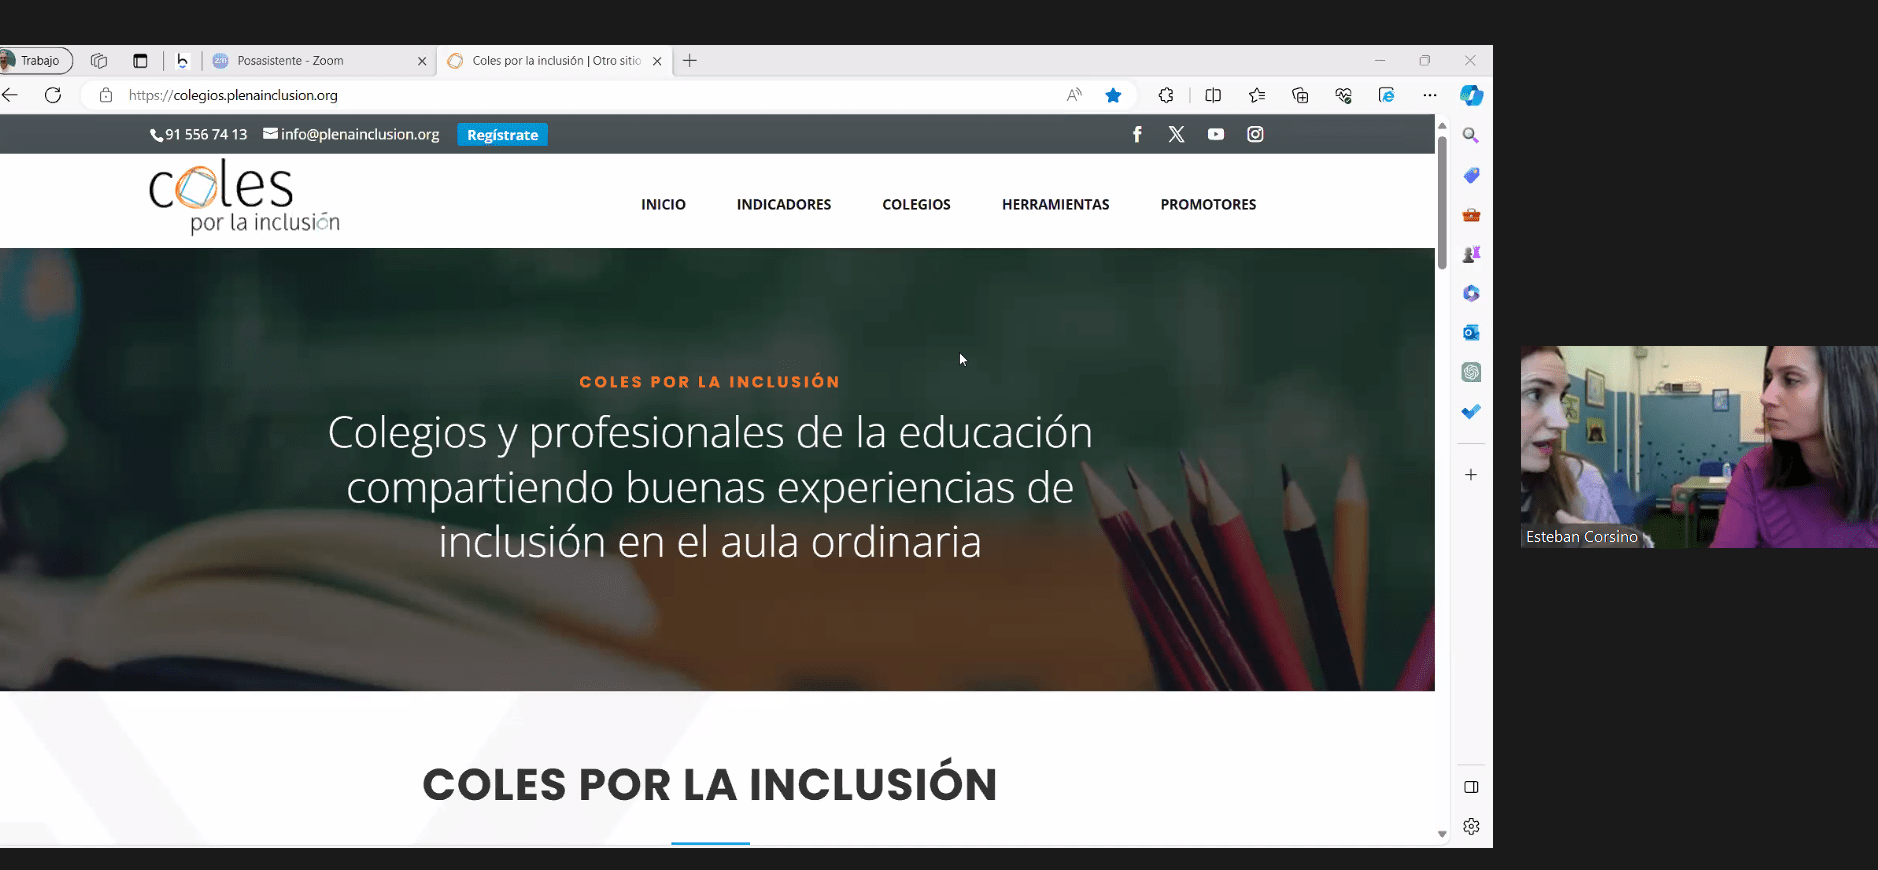 Ir a La nueva web ‘Coles por la inclusión’ ofrece multitud de recursos para familias y profesionales de la educación